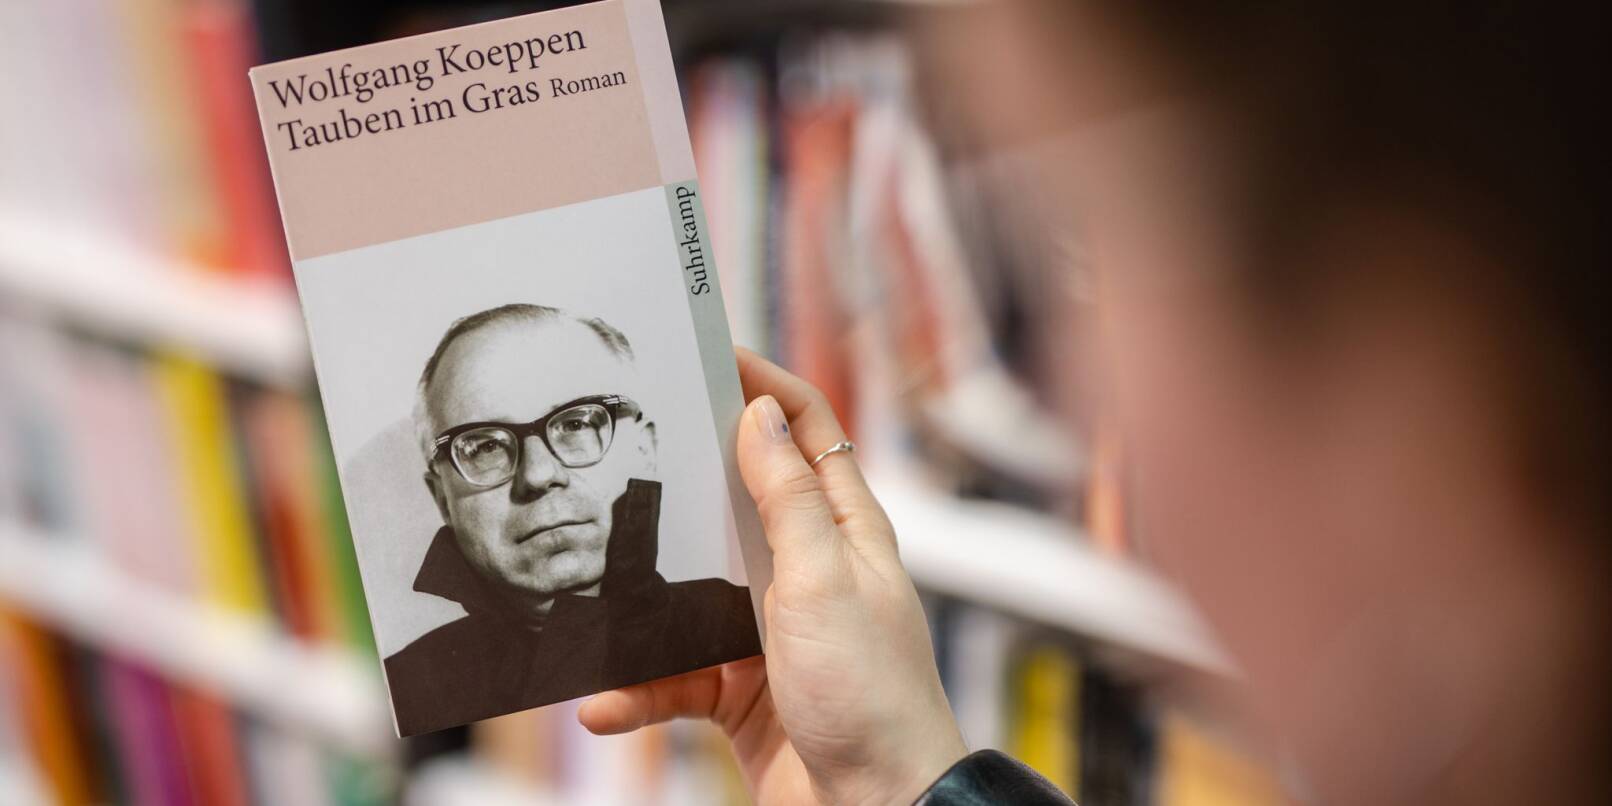 Eine Frau hält in einer Buchhandlung das Buch «„Tauben im Gras»“ von Wolfgang Koeppen in ihrer Hand.